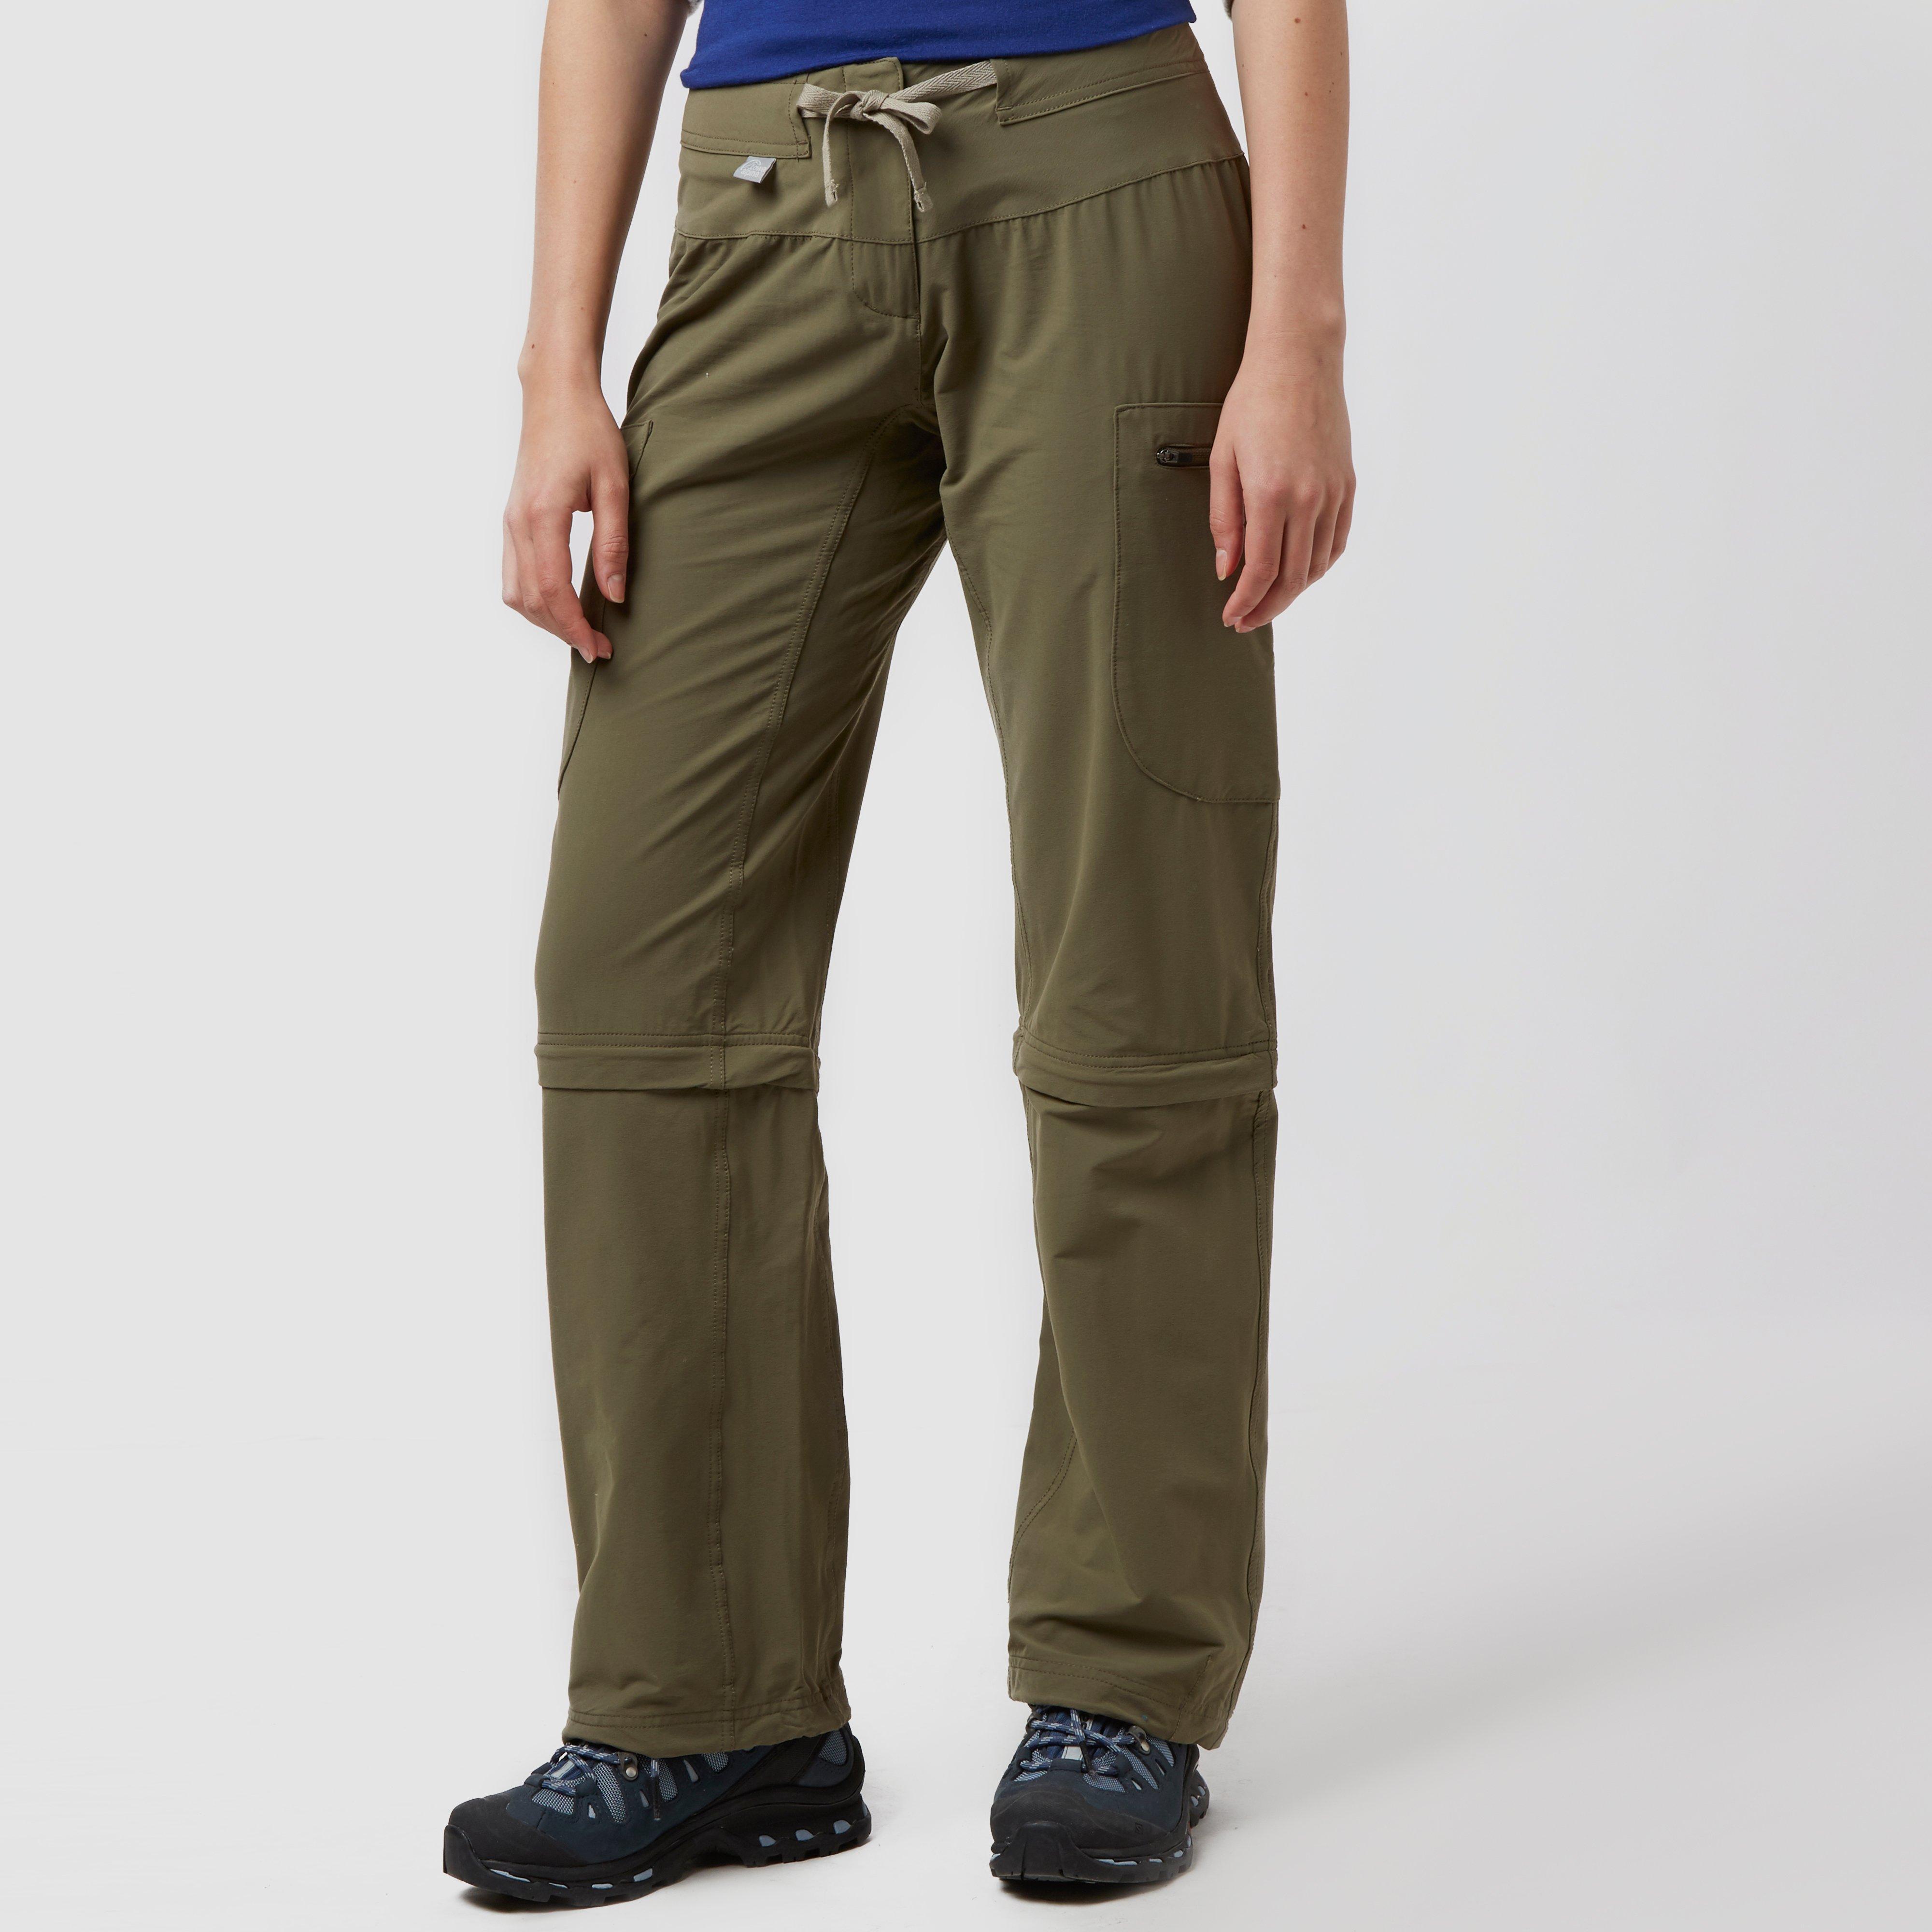 Lowe alpine trousers